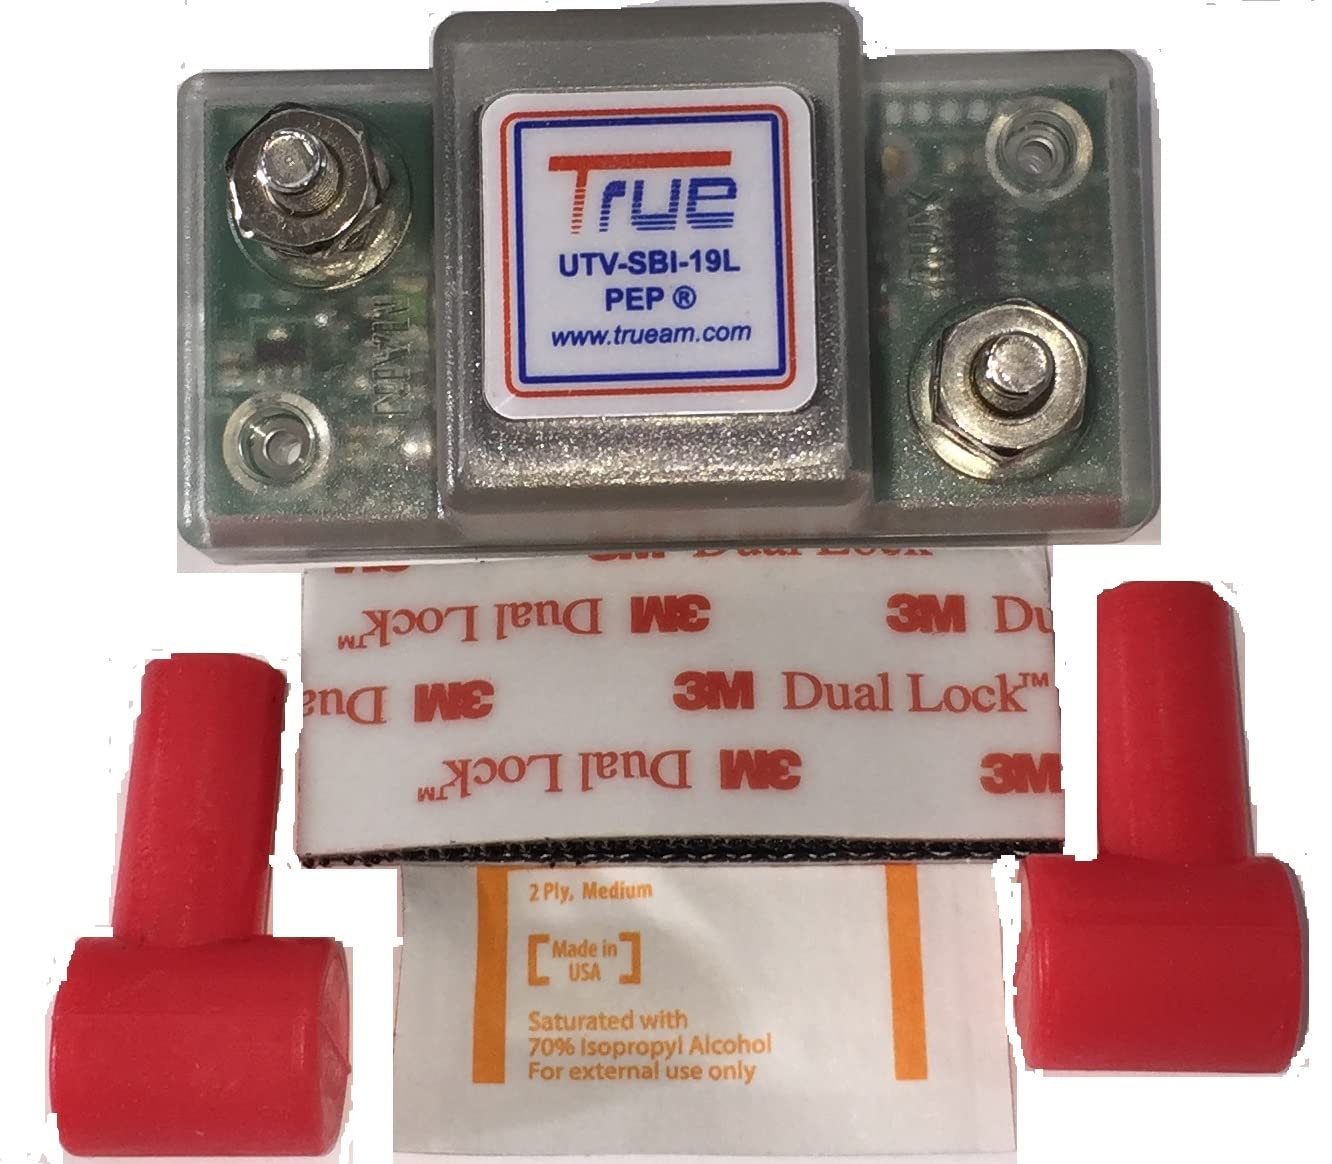 TRUE® UTV-SBI-19L Smart Lithium Isolator for UTVs